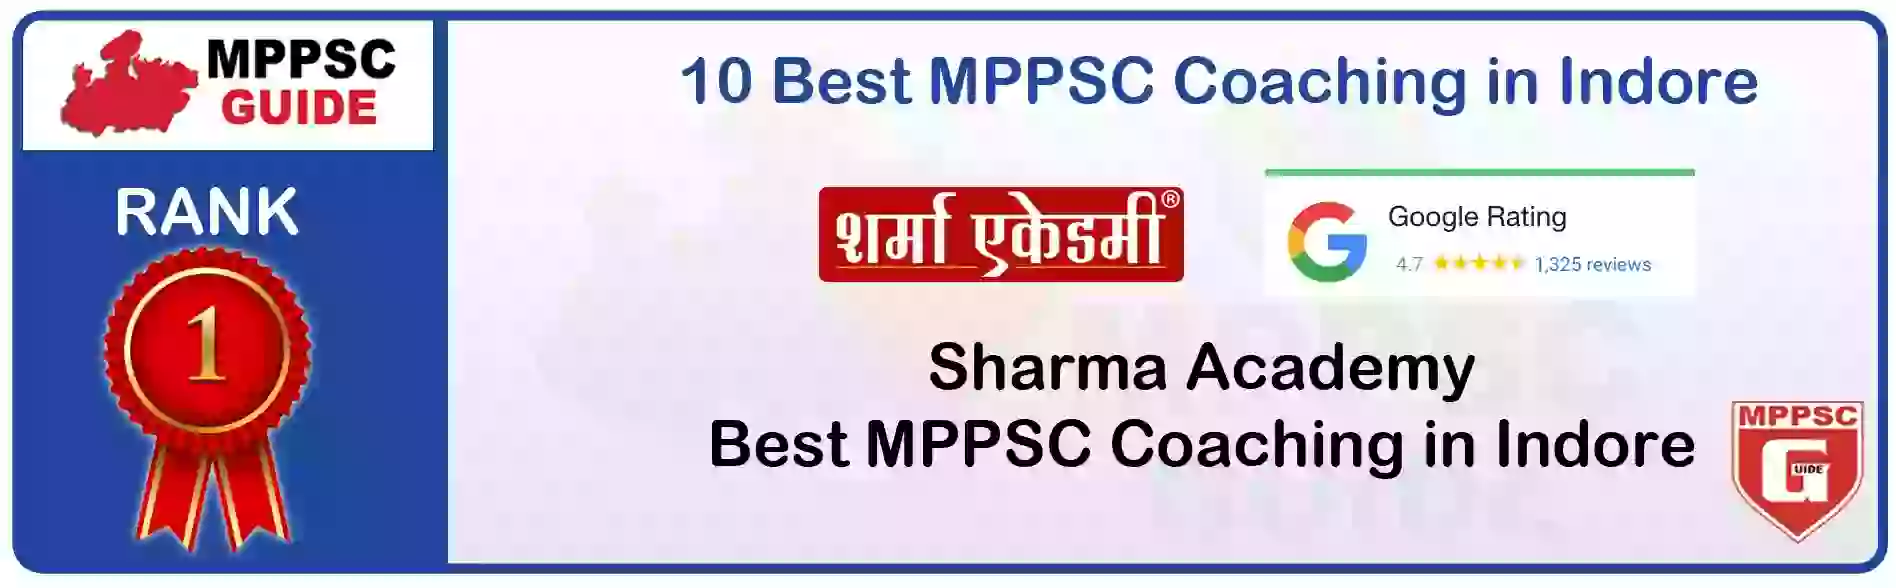 MPPSC Coaching in Sidhi, MPPSC Coaching Institute In Sidhi, Best MPPSC Coaching in Sidhi, Top 10 MPPSC Coaching In Sidhi, best mppsc coaching institute in sidhi, MPPSC Coaching Classes In Sidhi, MPPSC Online Coaching In Sidhi, mppsc coaching in Sidhi bhanwarkua